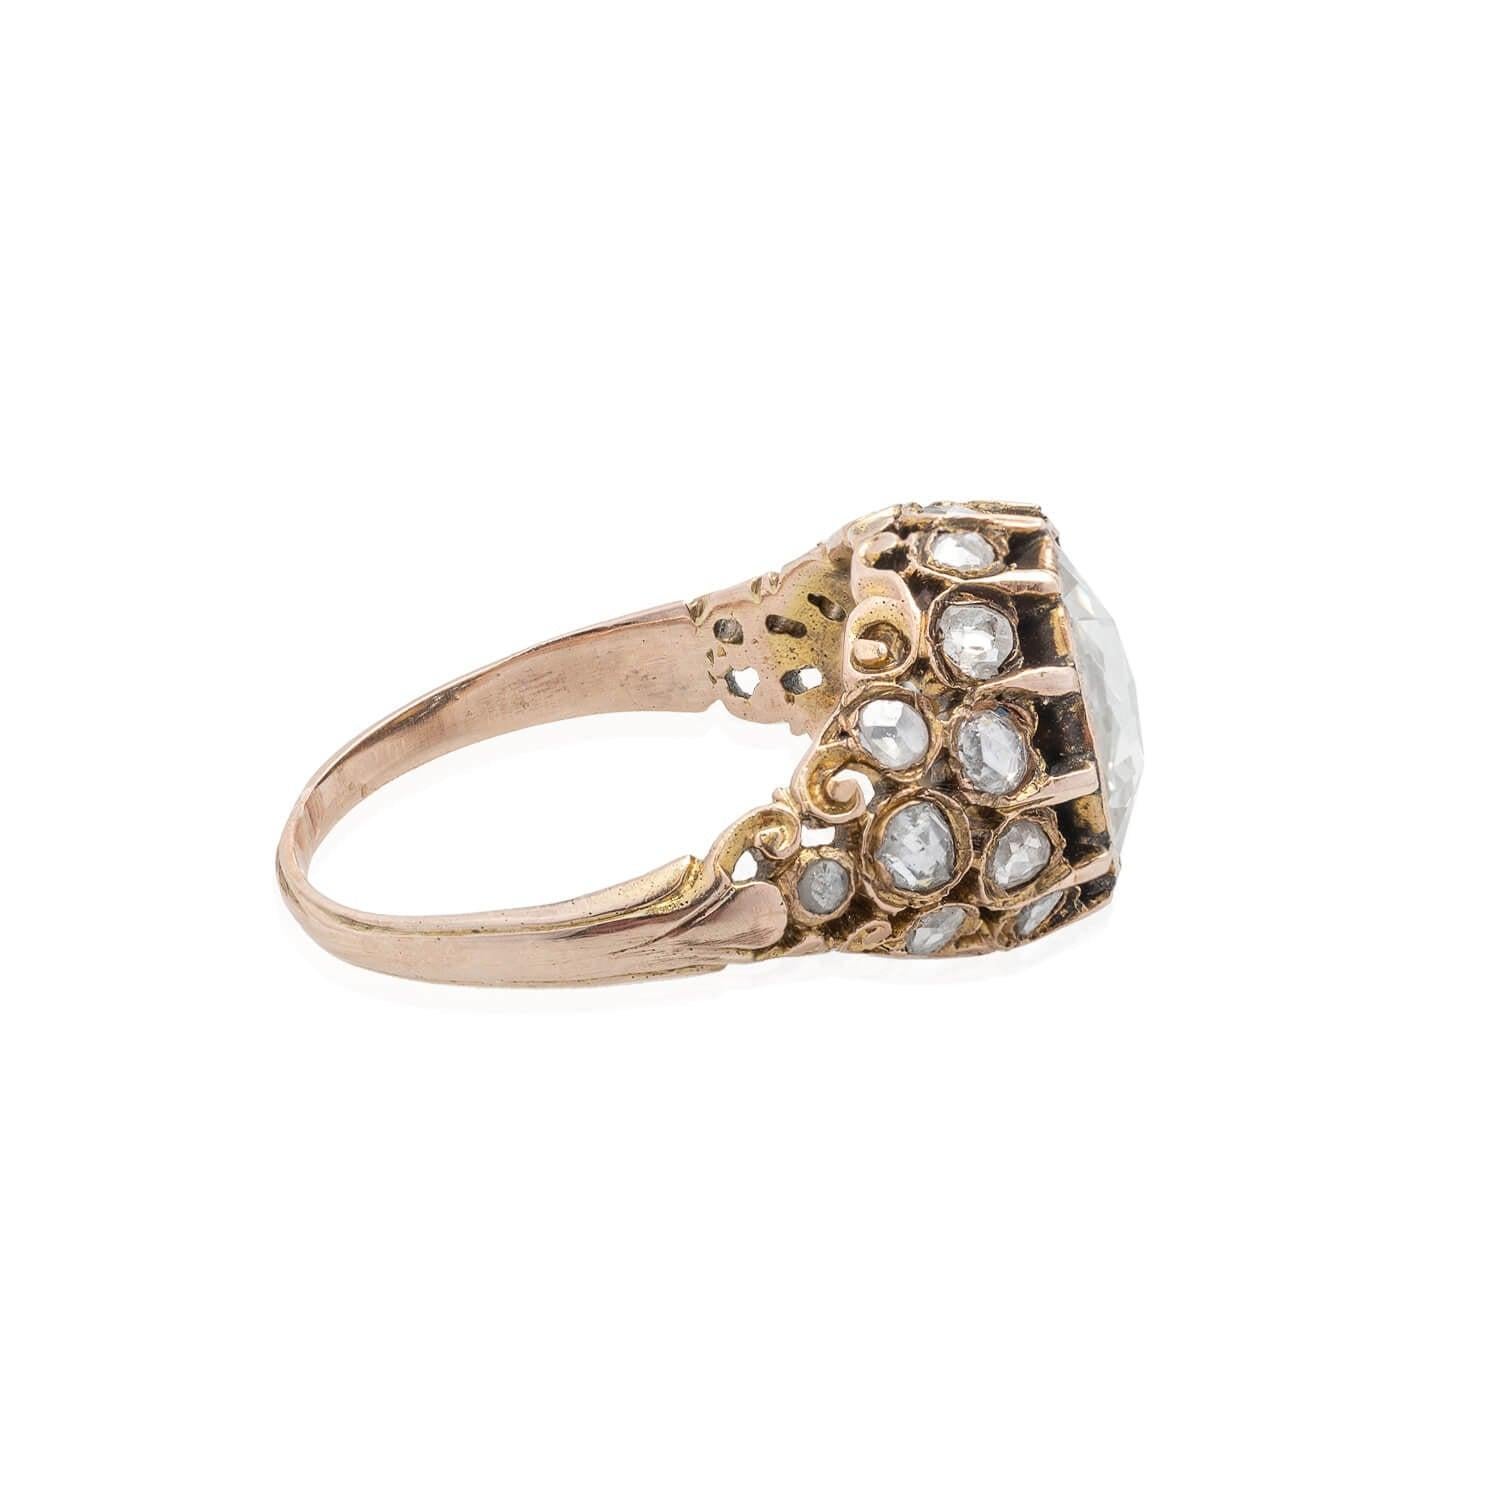 Ein atemberaubender Ring aus der georgianischen Epoche (ca. 1750)! Dieser Ring aus 18 Karat rosafarbenem Gelbgold ist mit einem unglaublichen Diamanten im Rosenschliff (~2ctw) besetzt. Der mit Folie hinterlegte Diamant funkelt in einer